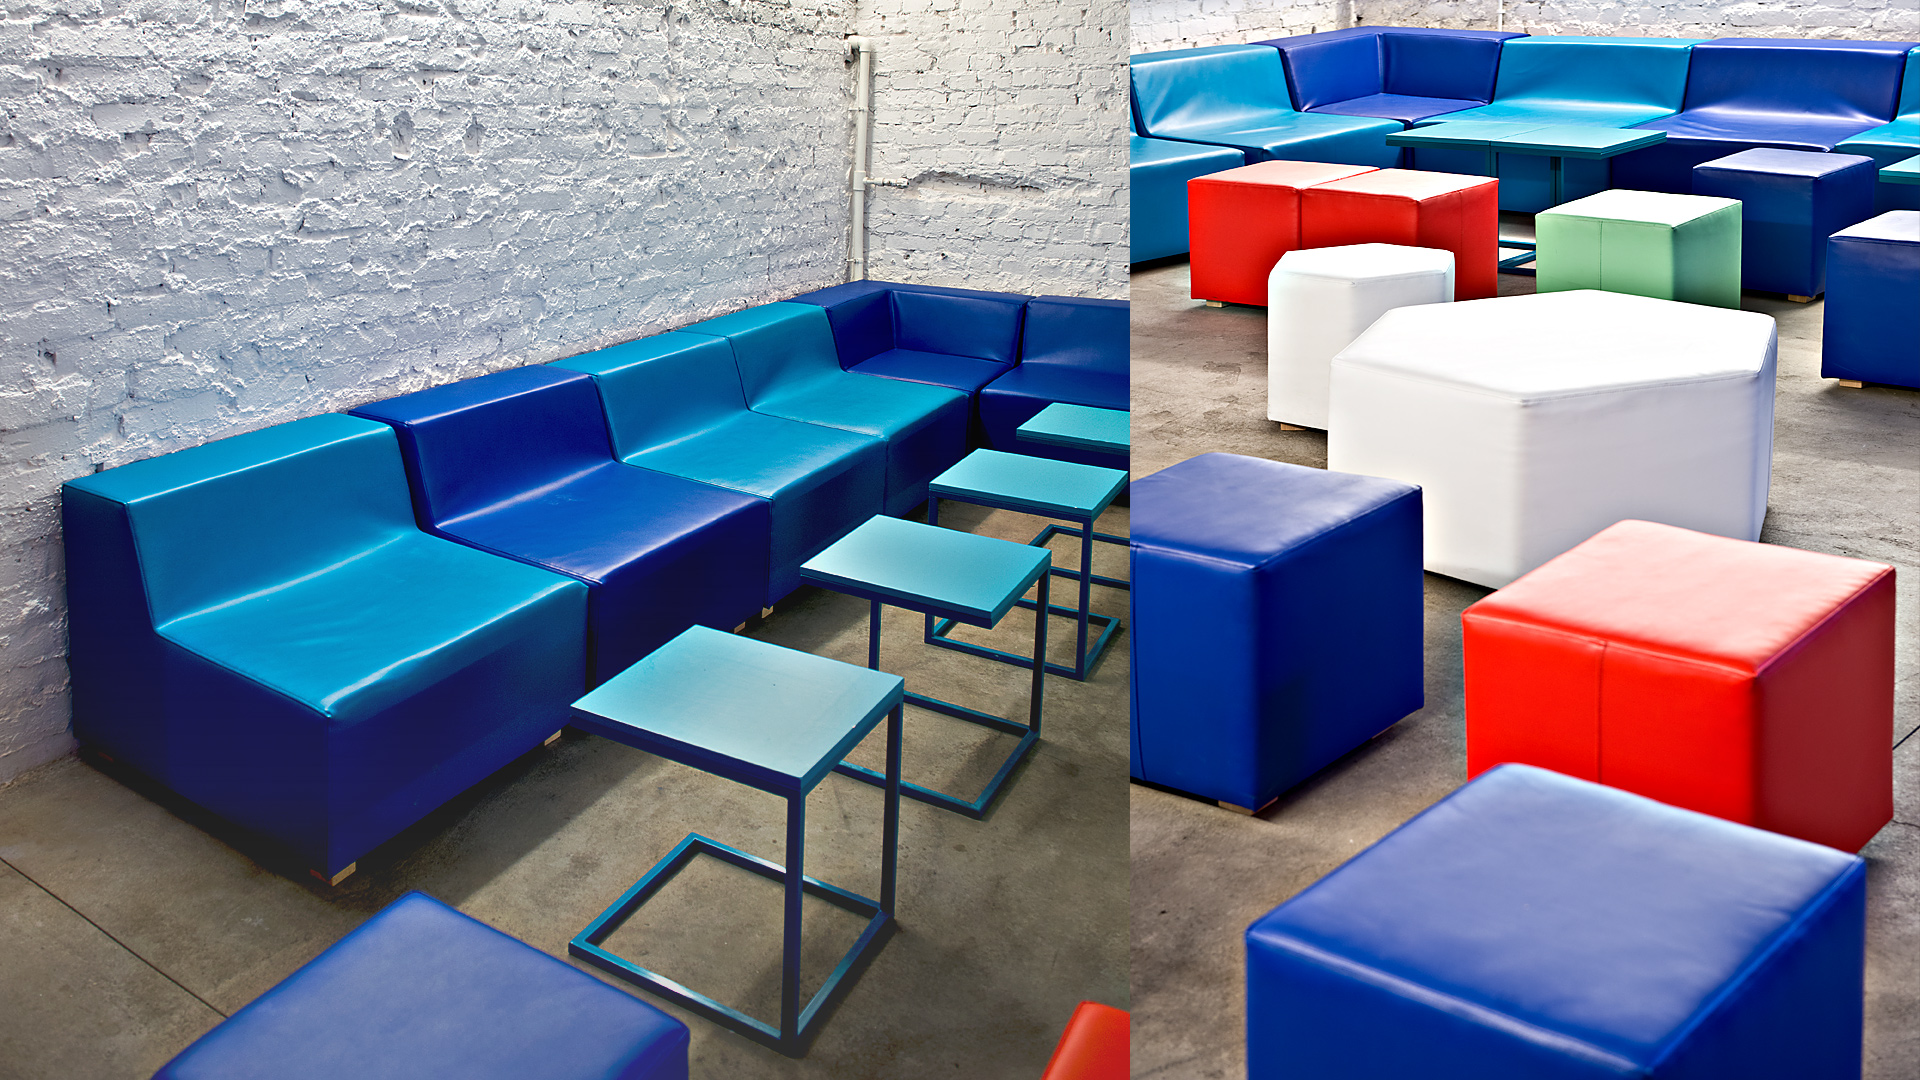 Specjalnie na potrzeby tego wnętrza, zaprojektowaliśmy system siedzisk: prostych brył w mocnych kolorach, z towarzyszącymi im stolikami.